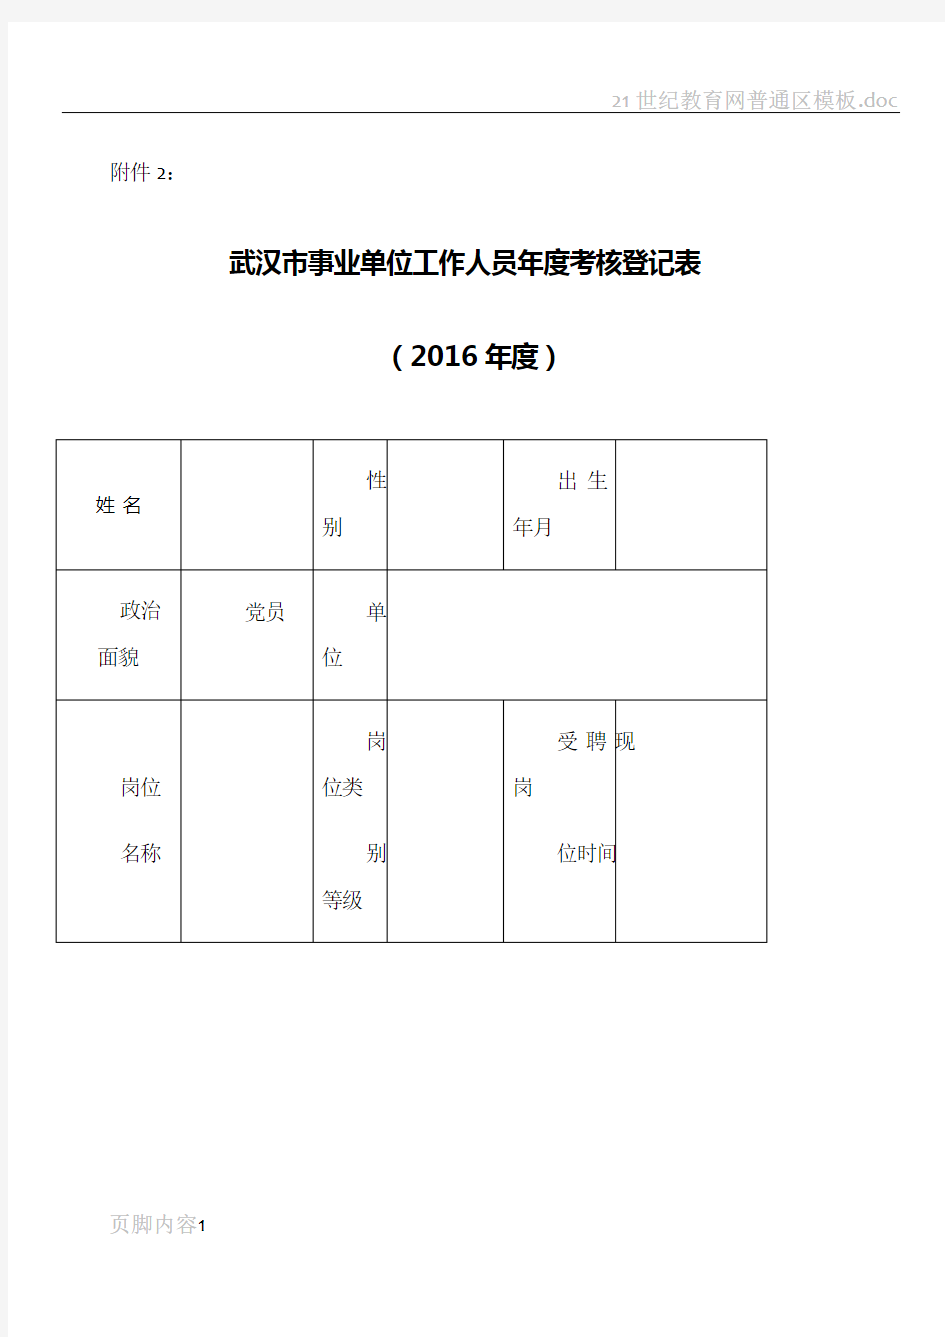 武汉市事业单位工作人员年度考核登记表2016